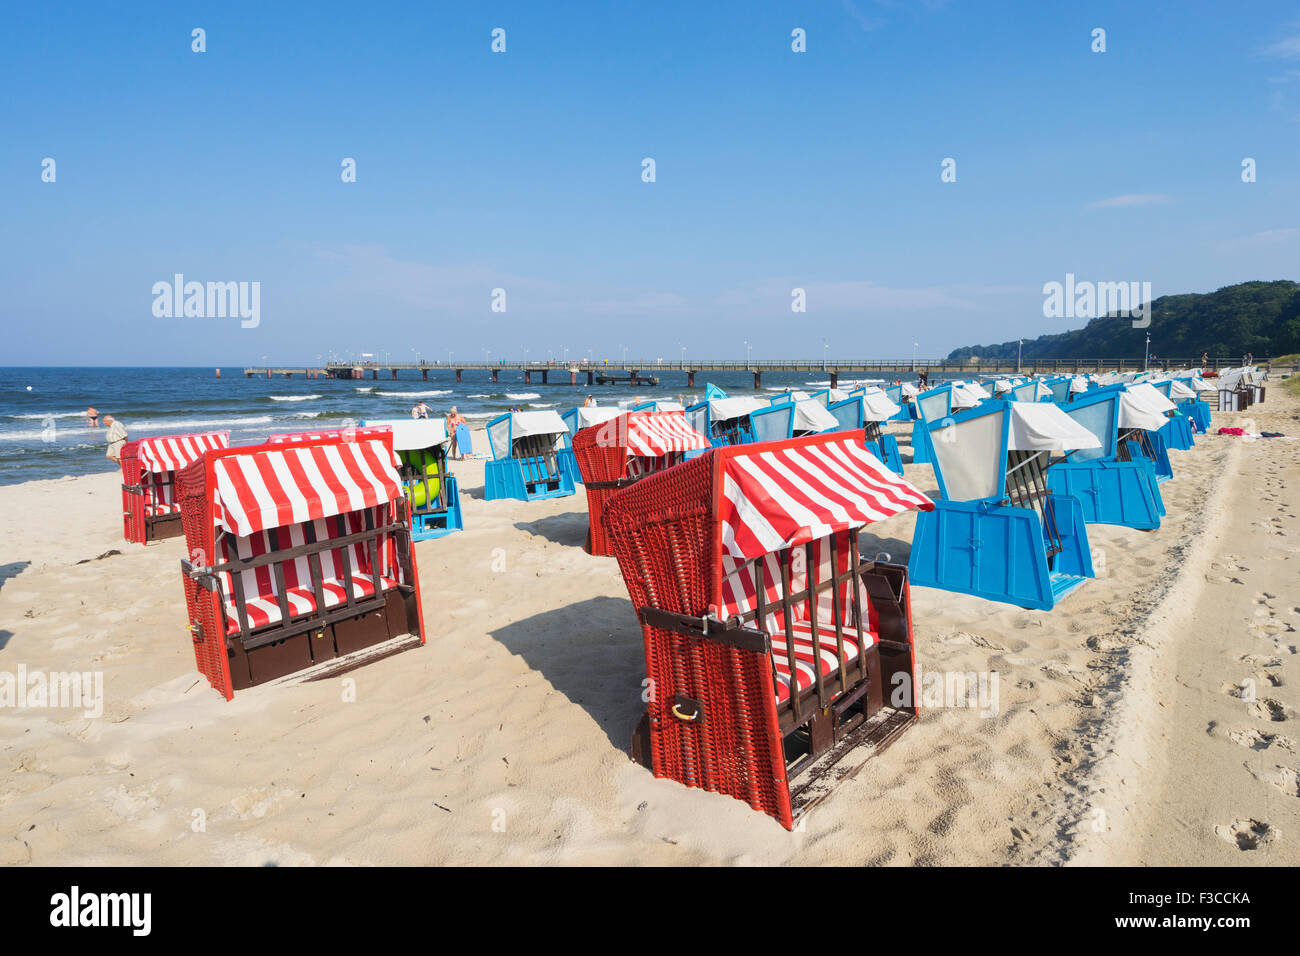 Traditionellen Strandkorb Strandkörbe am Strand von Göhren auf der Insel  Rügen in Deutschland Stockfotografie - Alamy